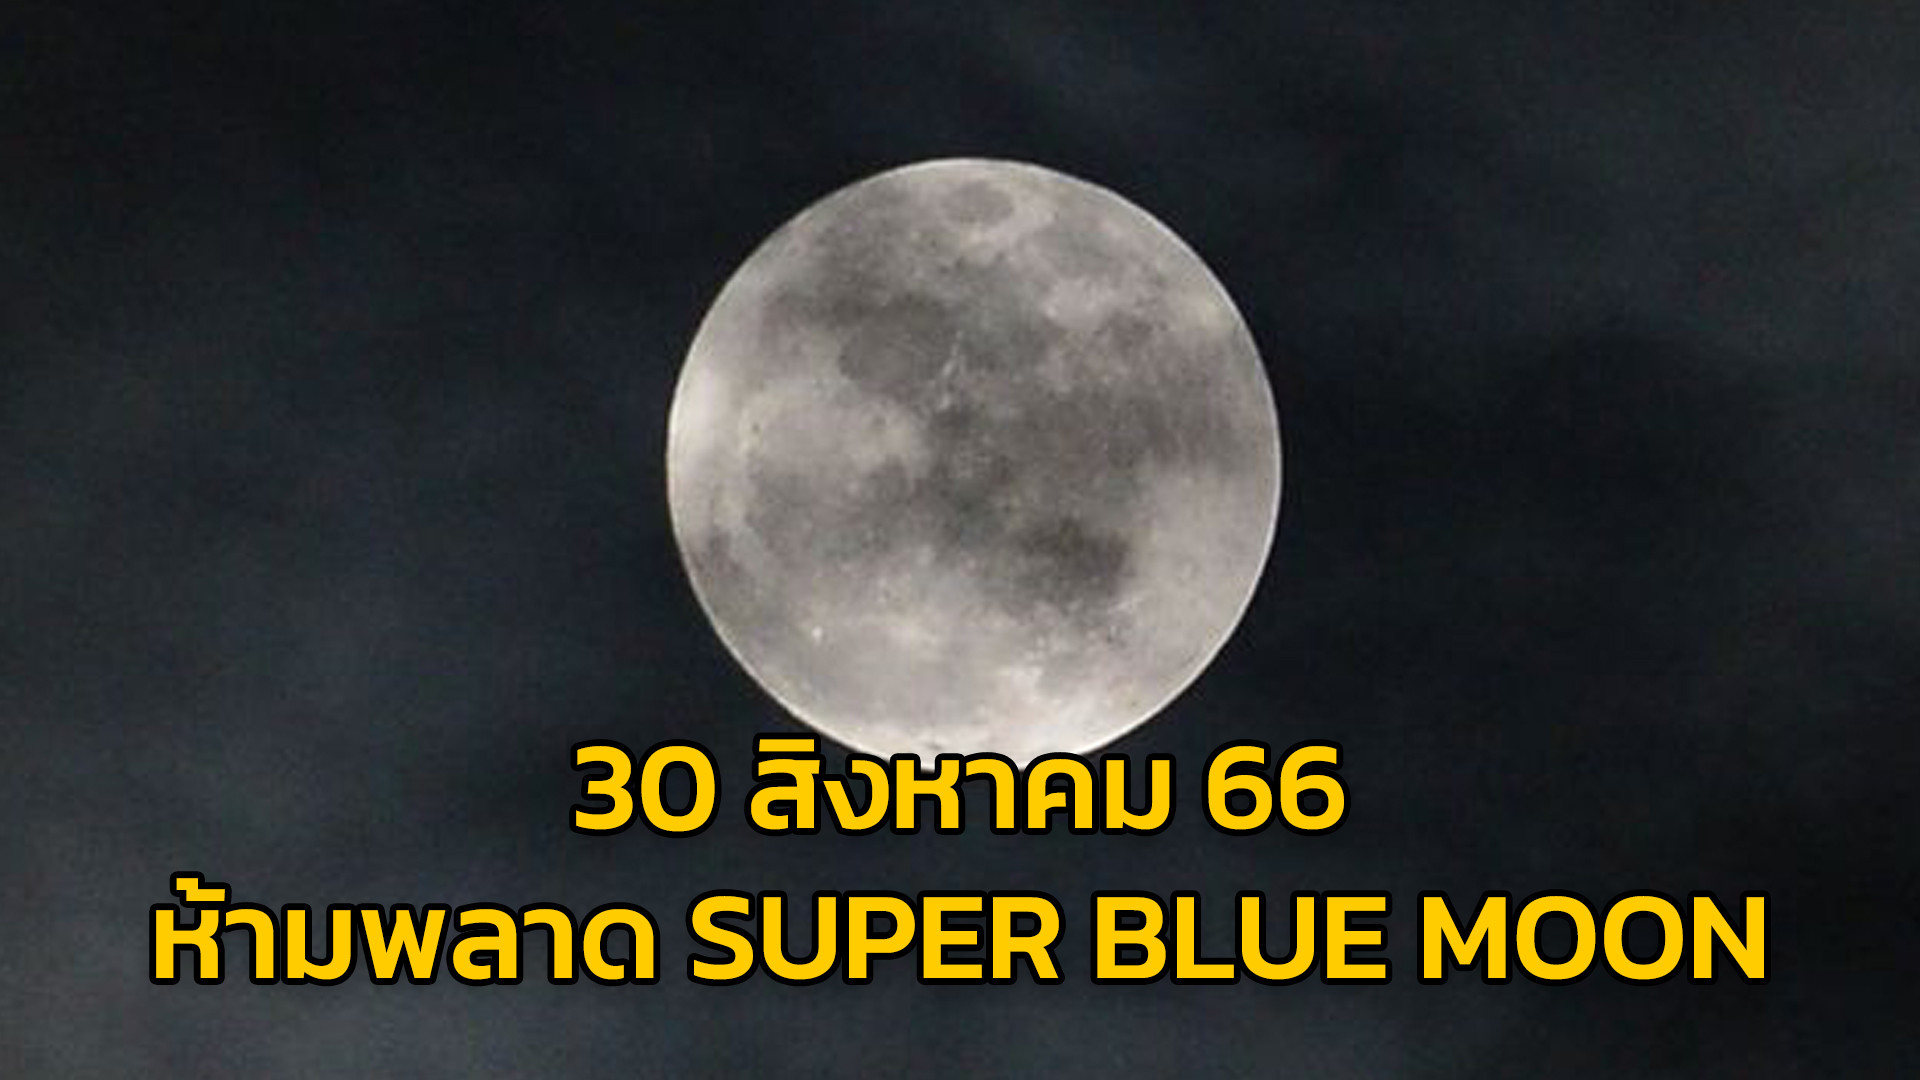 อย่าพลาด! วันนี้ (30 ส.ค.66) ปรากฏการณ์ Super Blue Moon